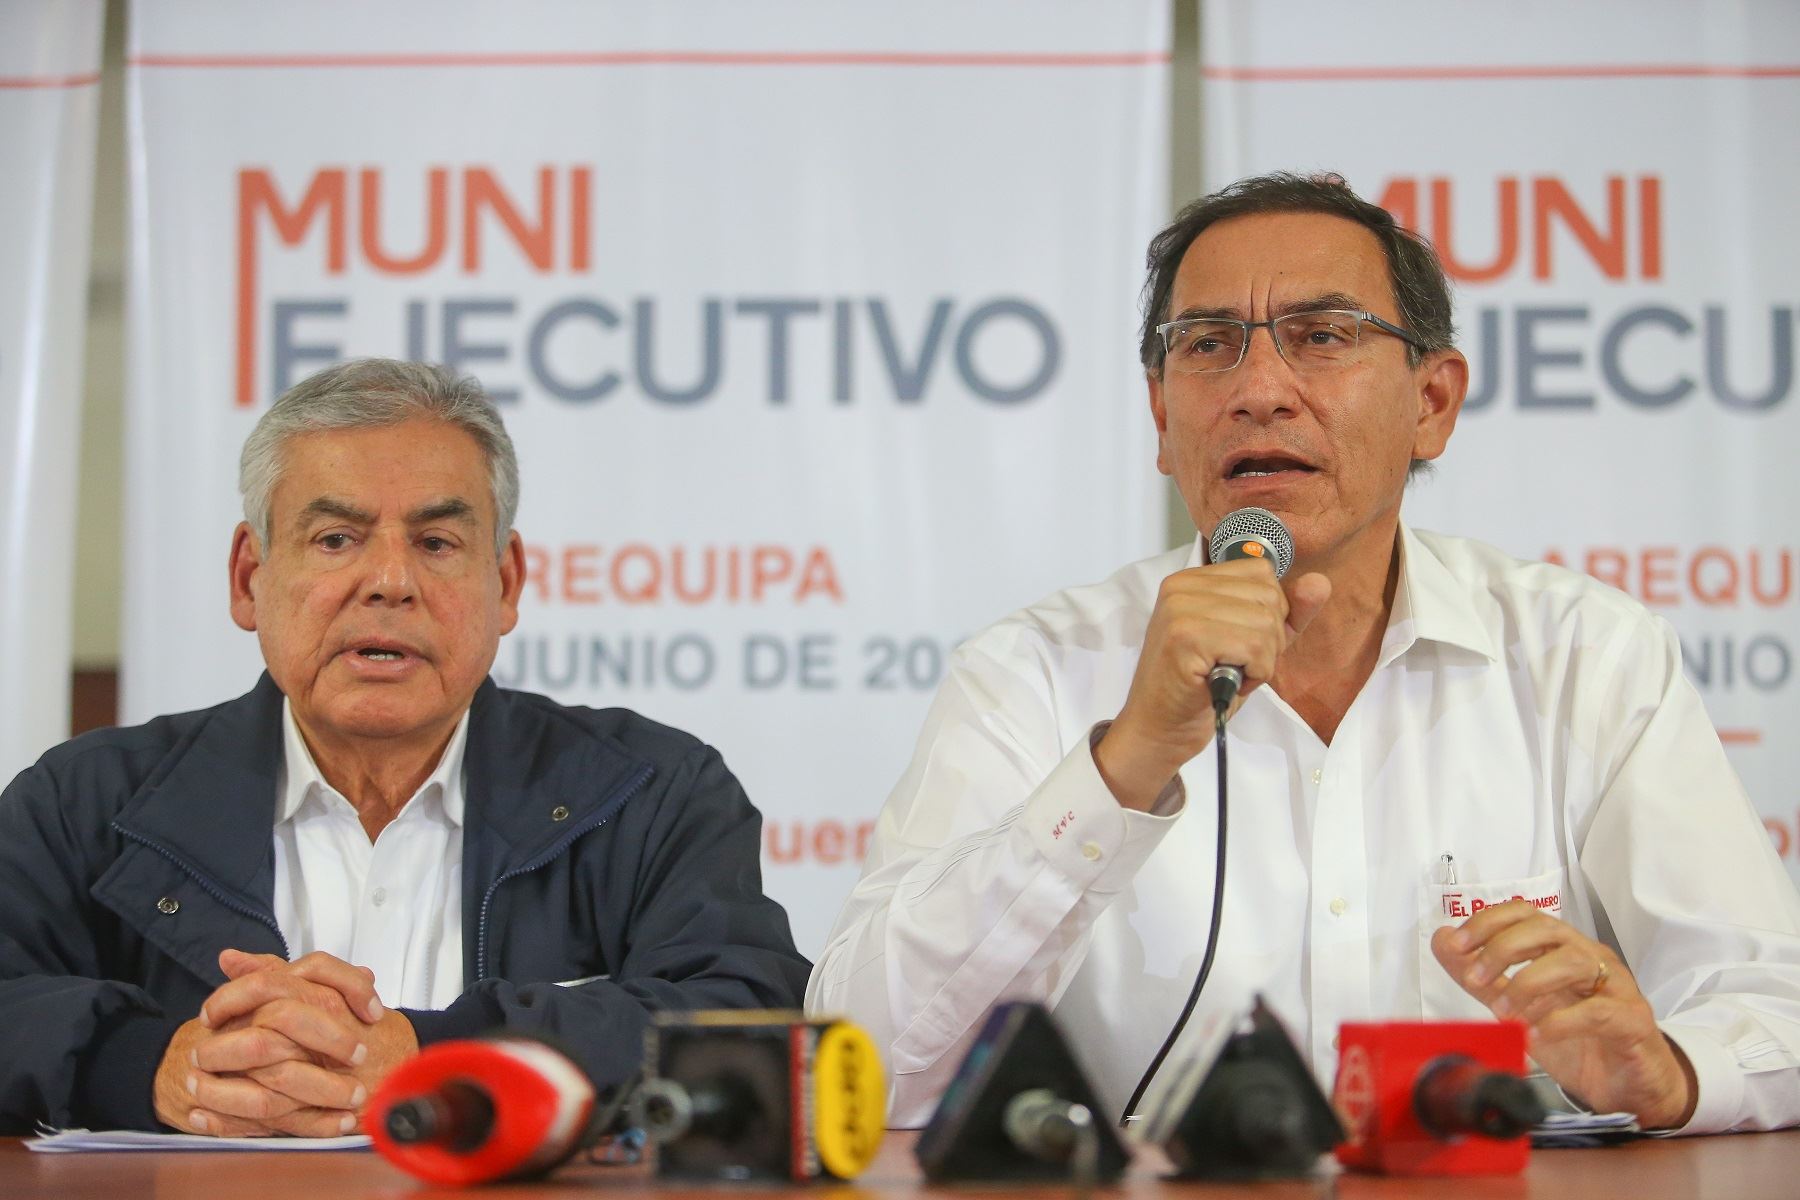 Presidente de la República, Martín Vizcarra, acompañado del titular del Gabinete Ministerial, César Villanueva, durante el Muni Ejecutivo realizado en Arequipa. Foto: Presidencia.